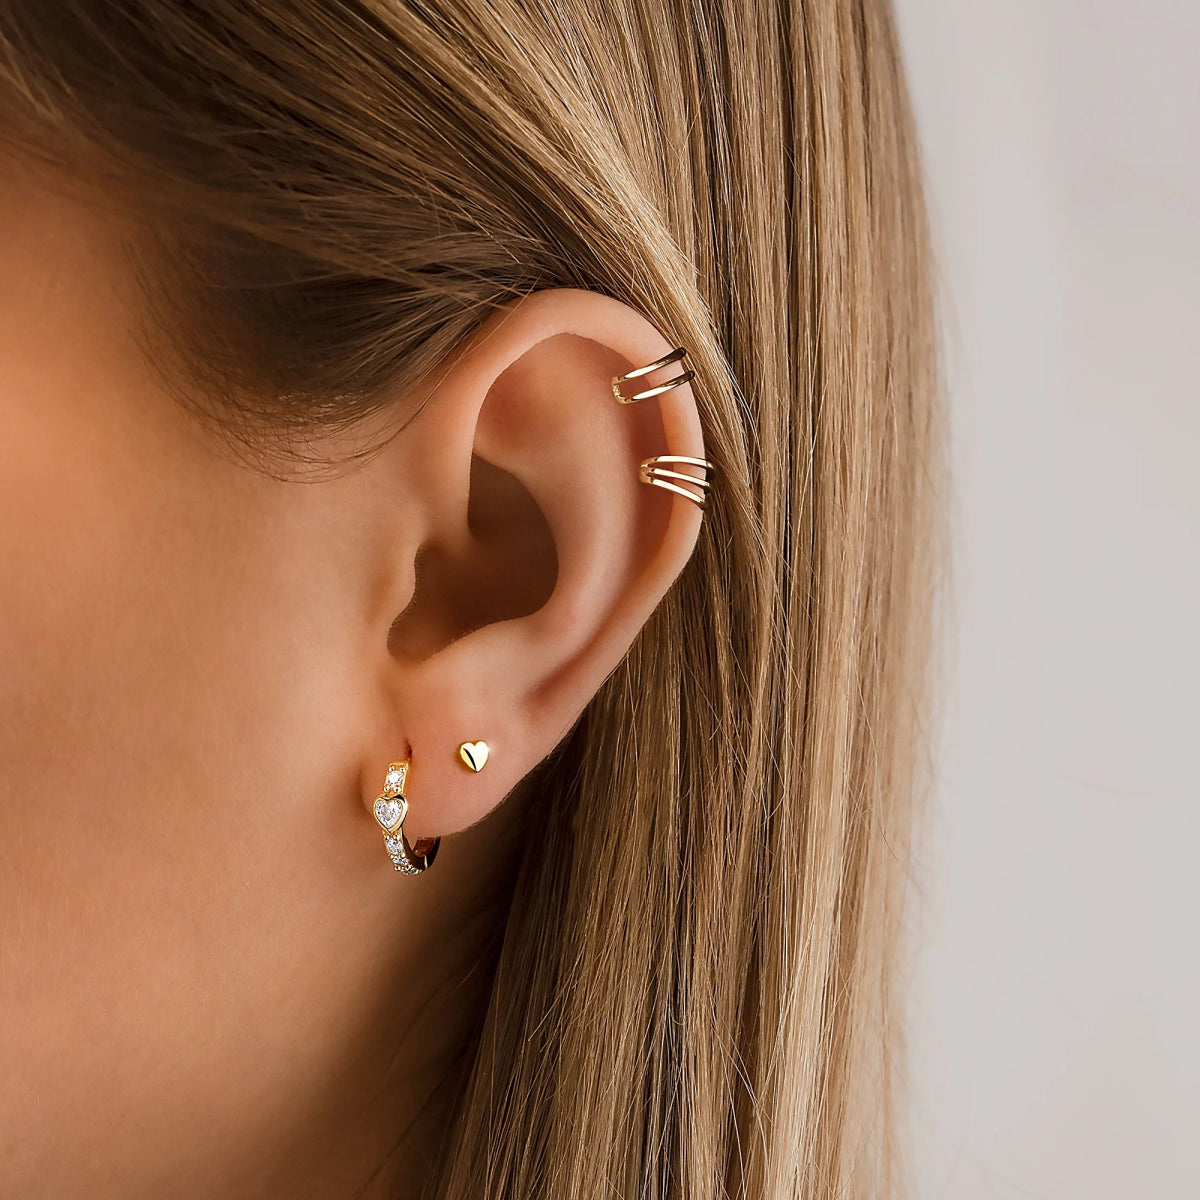 "Ear Cuff - Prestige" Earrings - Milas Jewels Shop